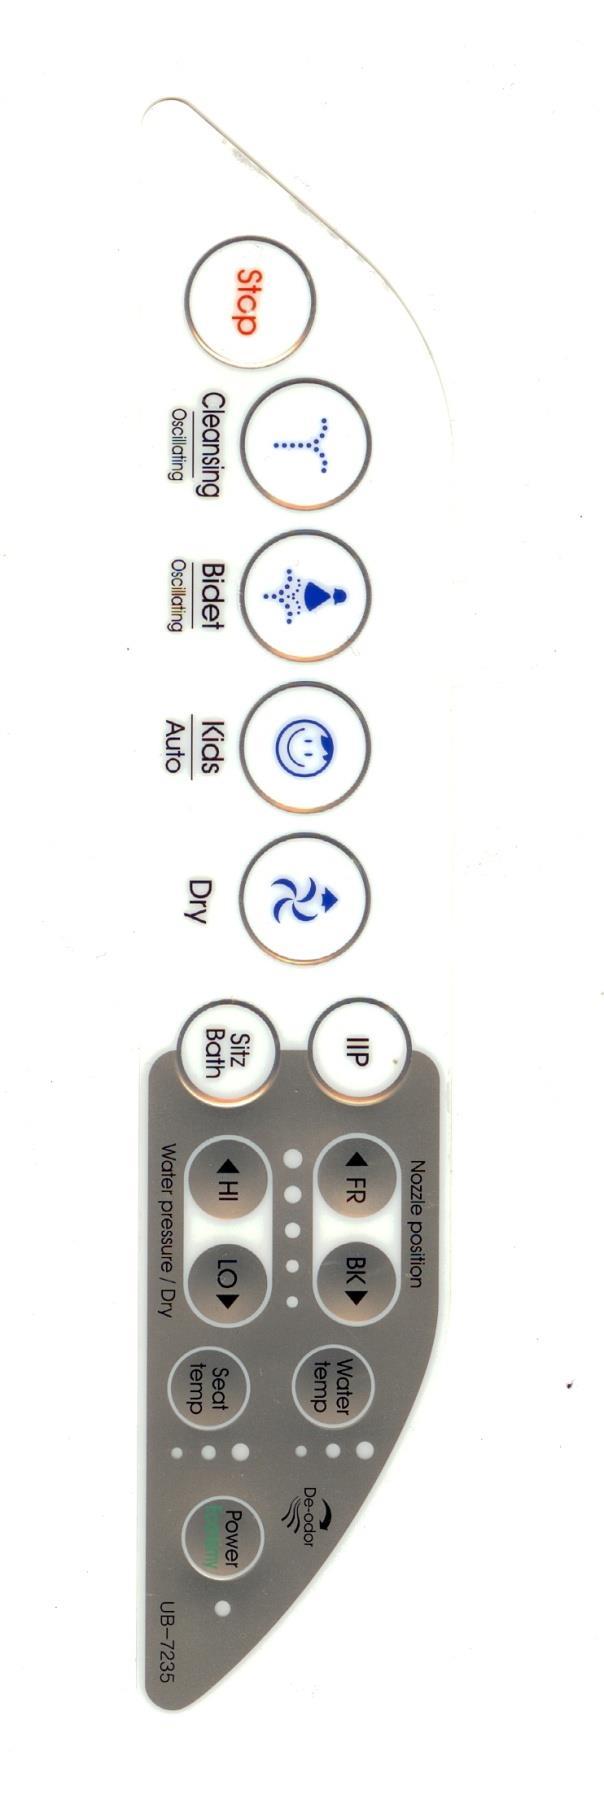 OVERZICHT VAN DE PICTOGRAMMEN Stop - gebruik de stopknop om de functie in gebruik uit te schakelen - de functie schakelt ook automatisch uit bij opstaan van de zitting Cleansing - druk op Cleansing